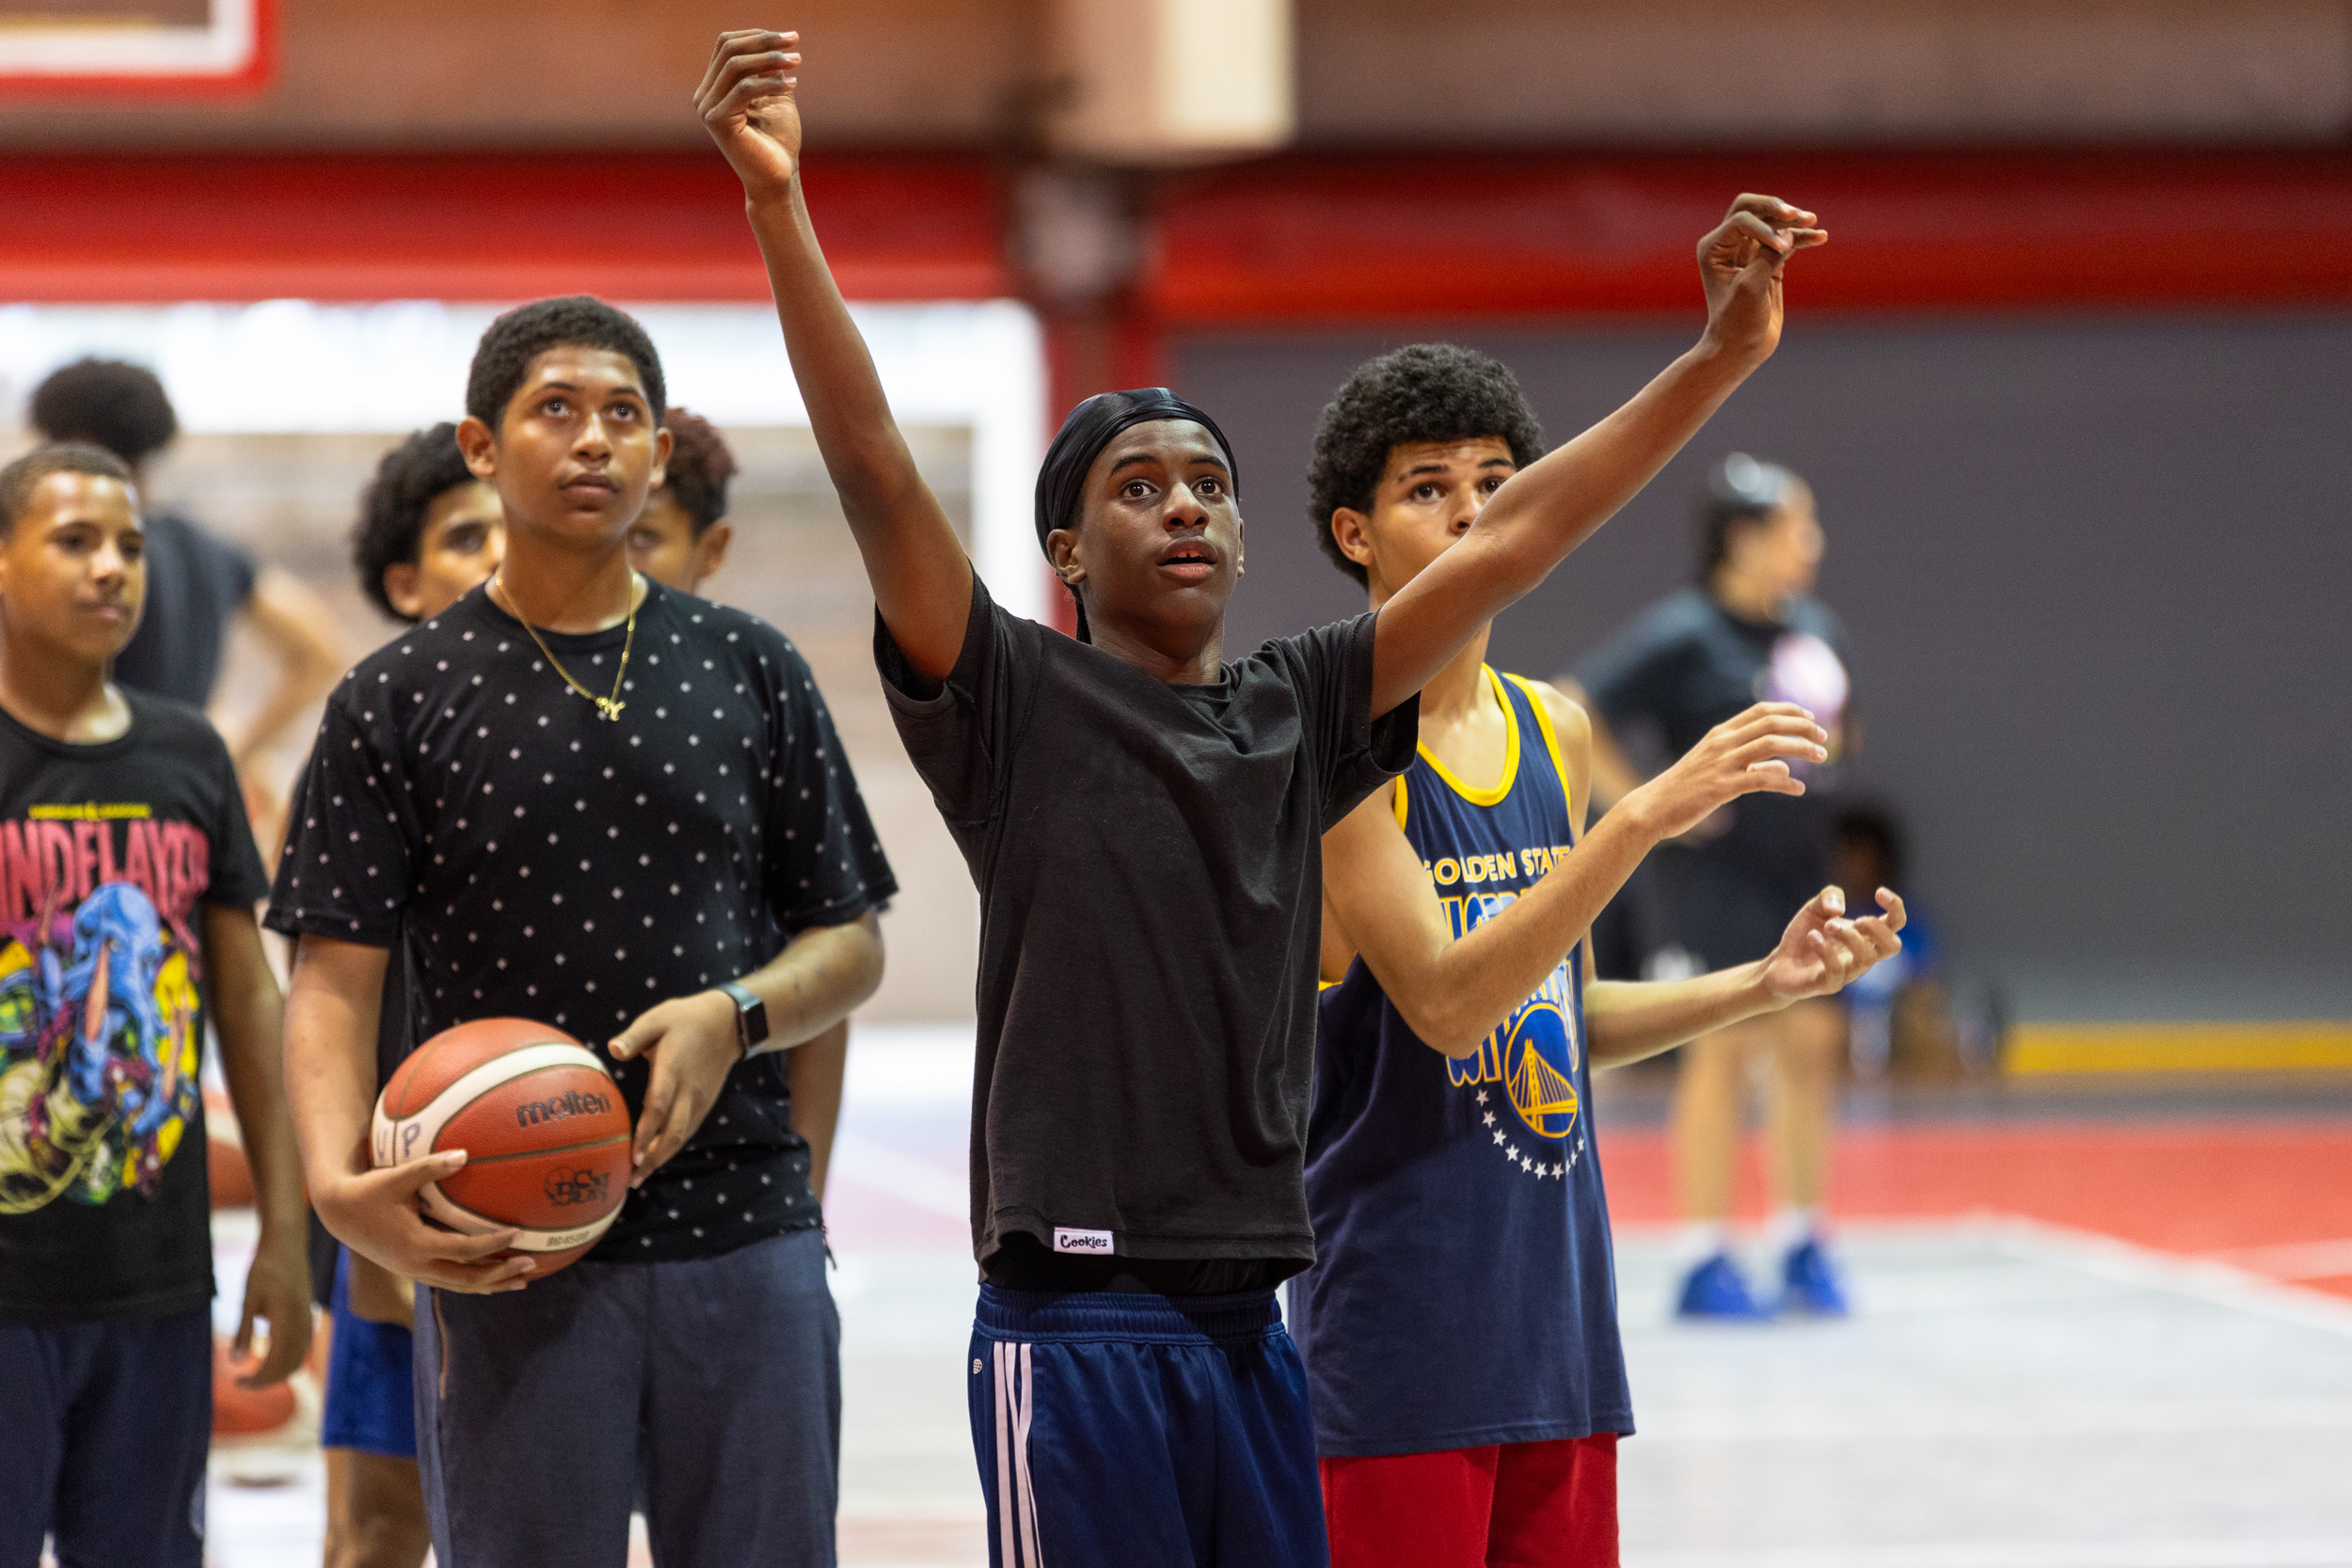 Los adolescentes practicaron destrezas como manejo de balón, puntería en el tiro y compañerismo durante las clínicas de básquet que se llevaron a cabo de marzo a mayo en el Complejo Deportivo del Recinto de Río Piedras